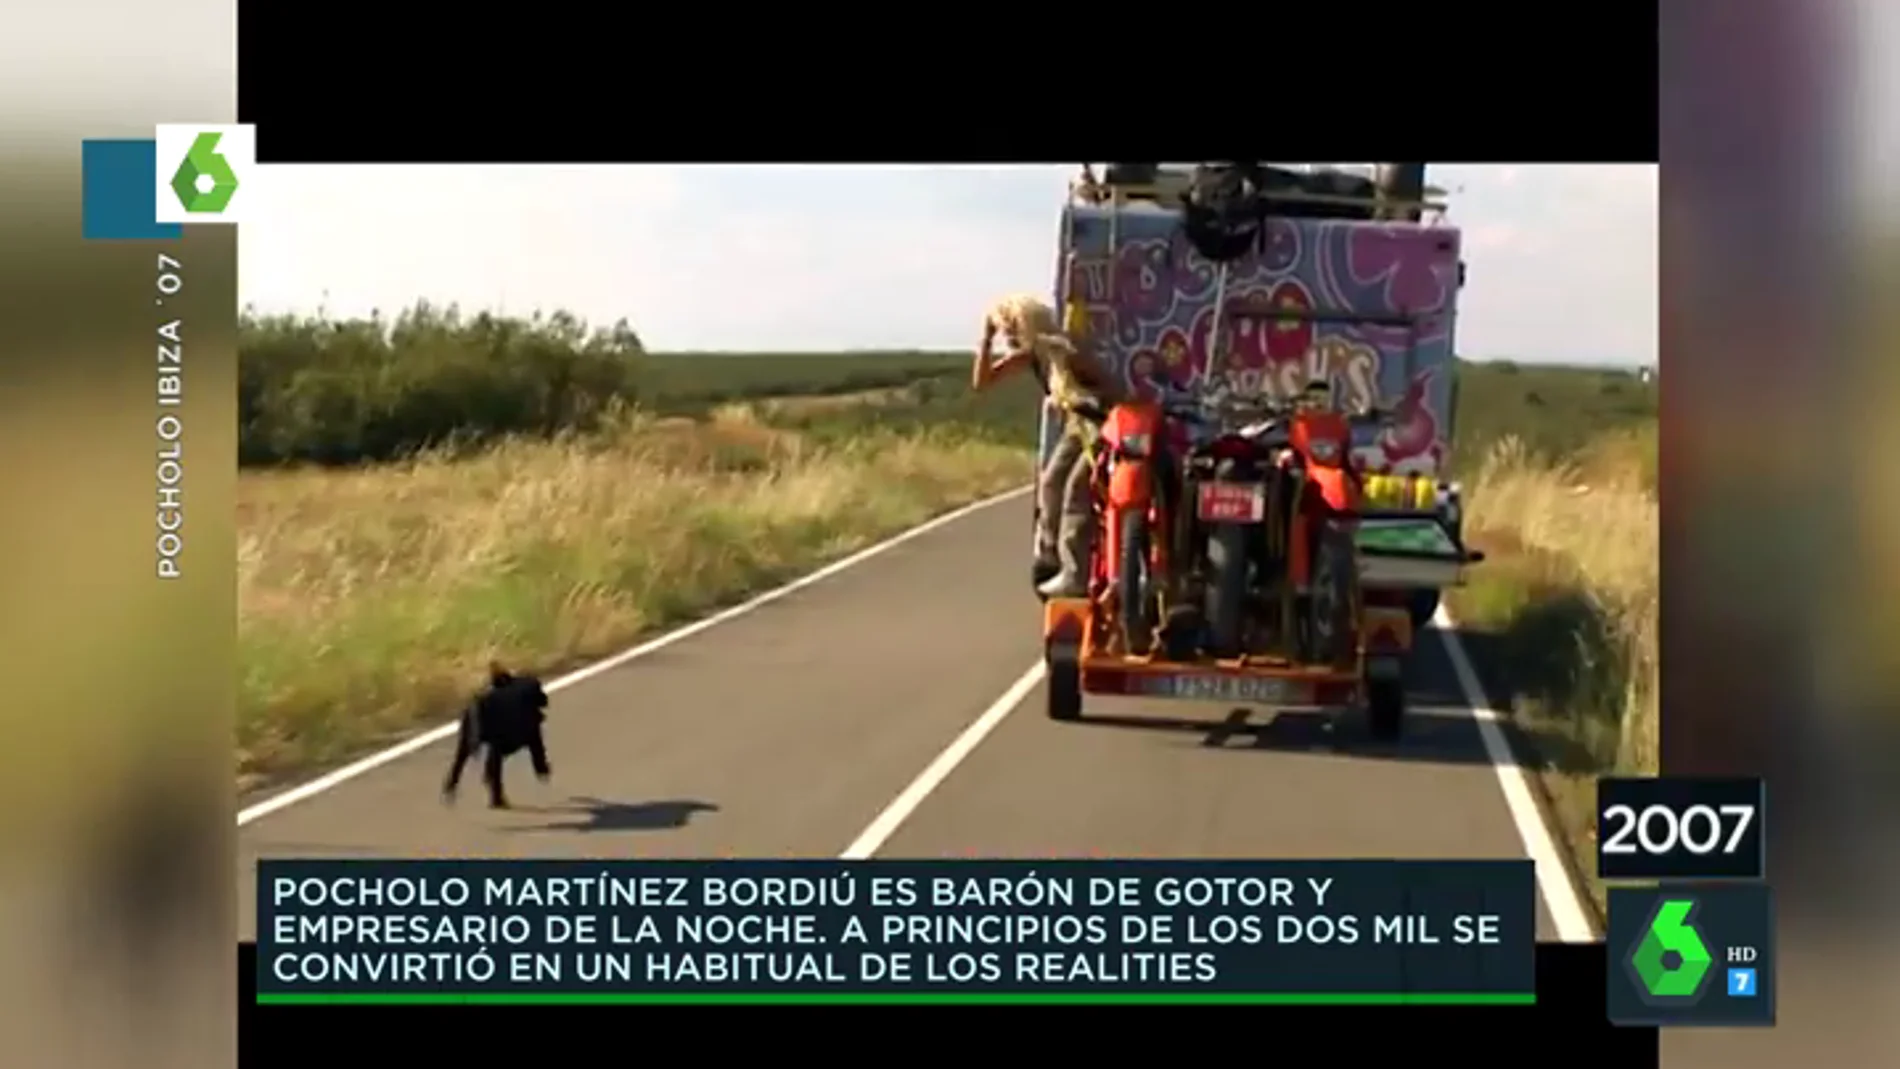 El día que Arancha Bonete se cayó a la carretera desde la caravana de 'Pocholo 07': "Se ha dado una hostia de cuello vuelto"